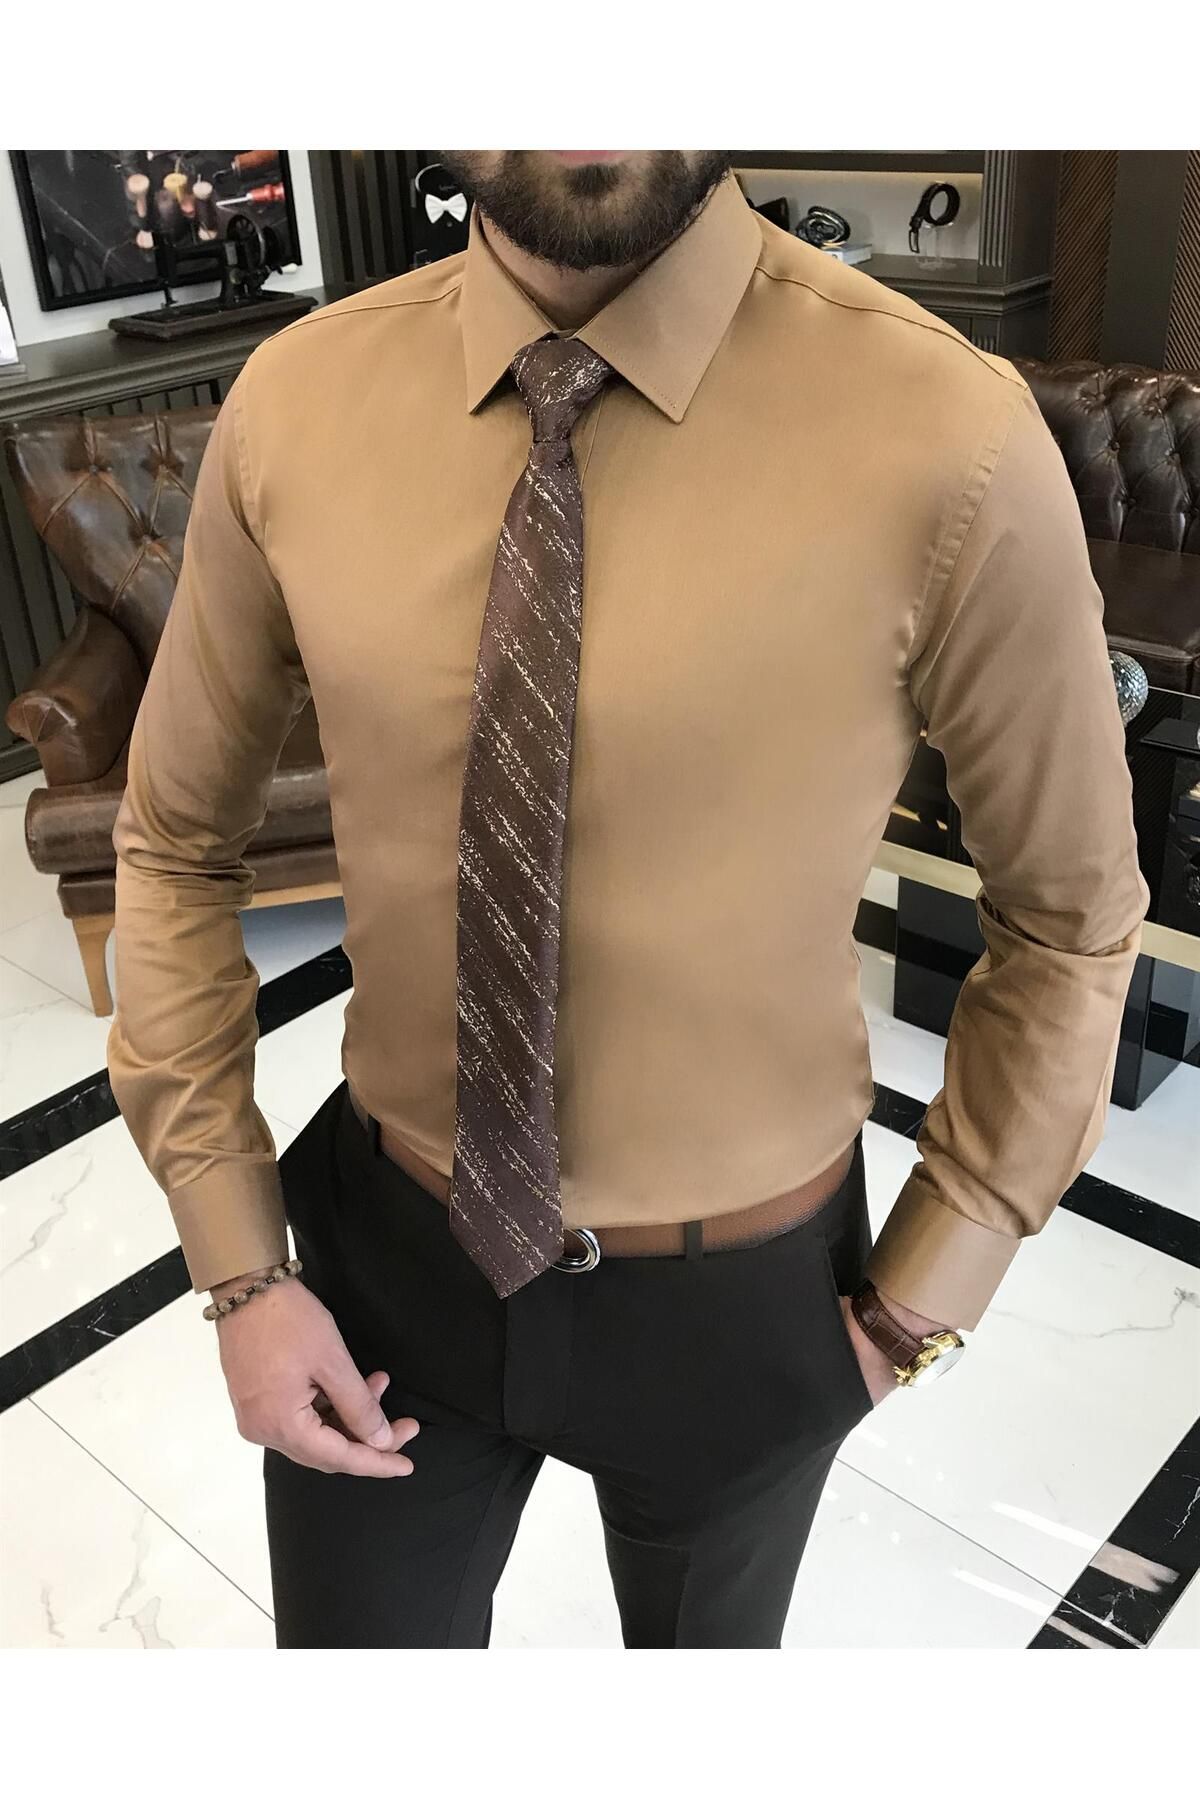 TerziAdemAltun İtalyan stil slim fit saten pamuk erkek kravat yaka gömlek hardal T9429